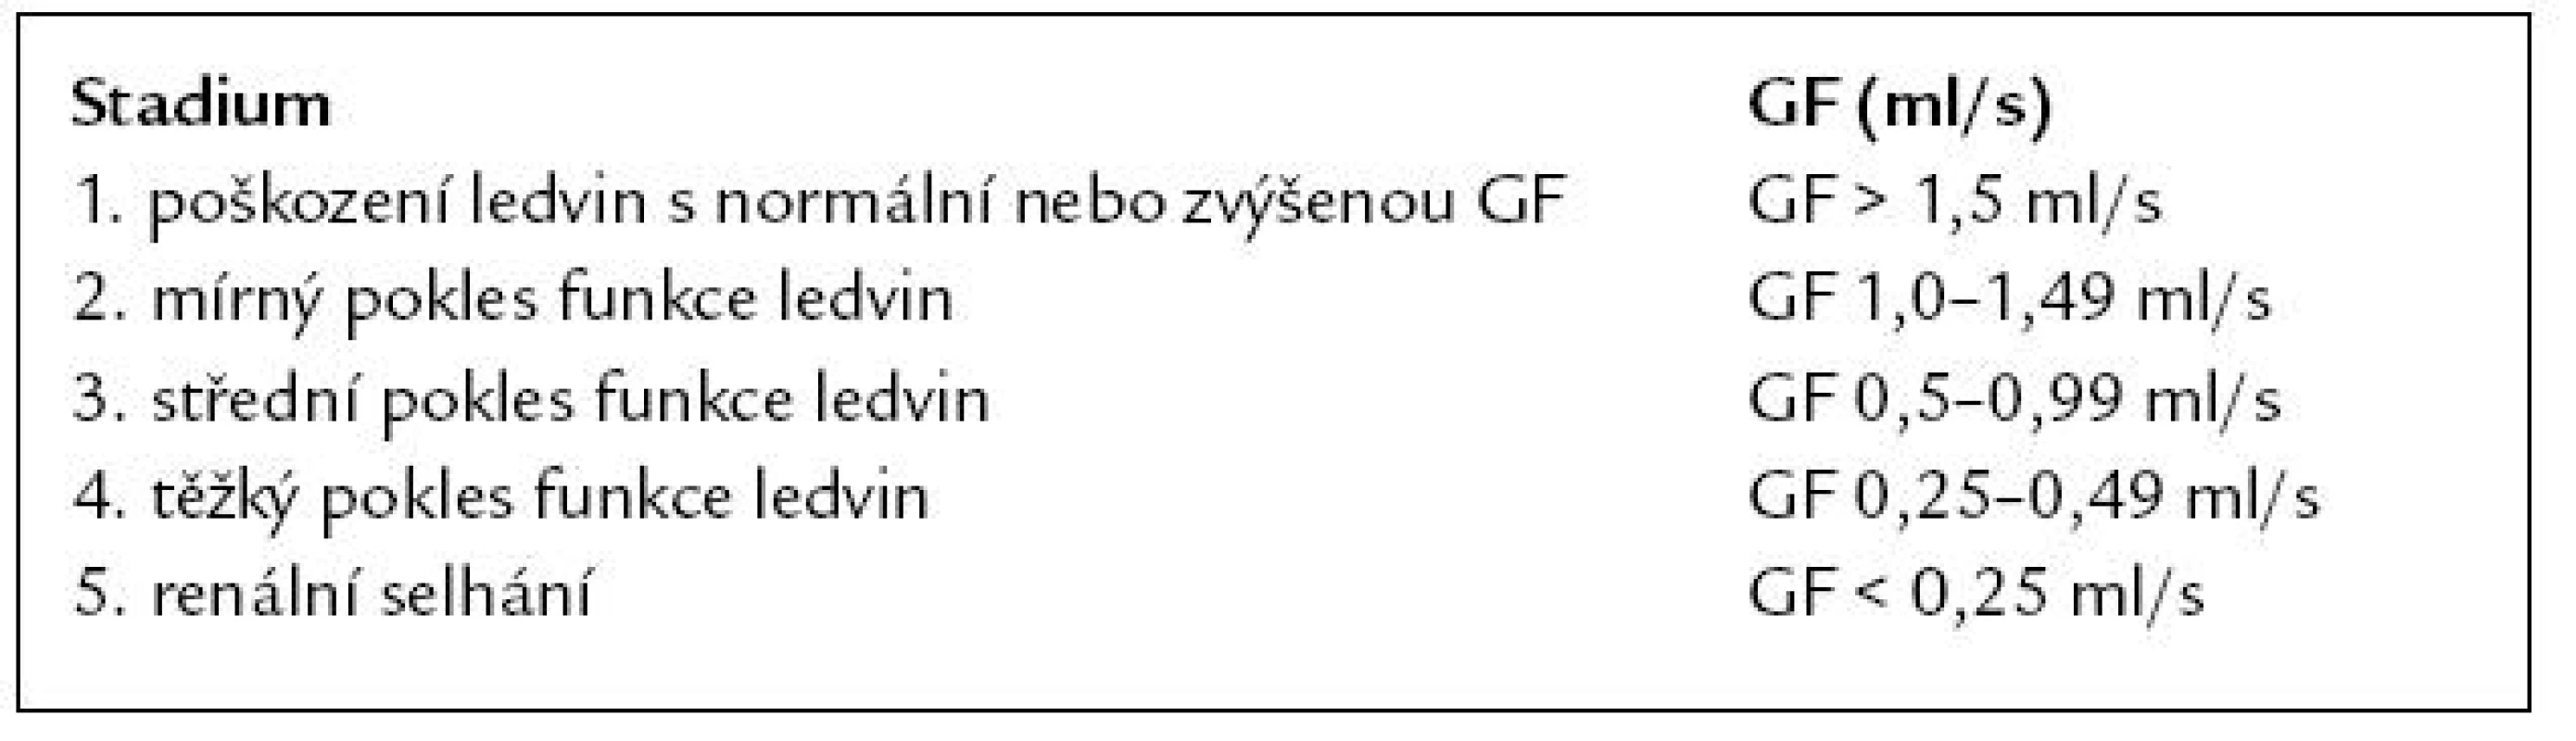 Stadia chronických chorob ledvin (NKF-K/DOQI 2002).